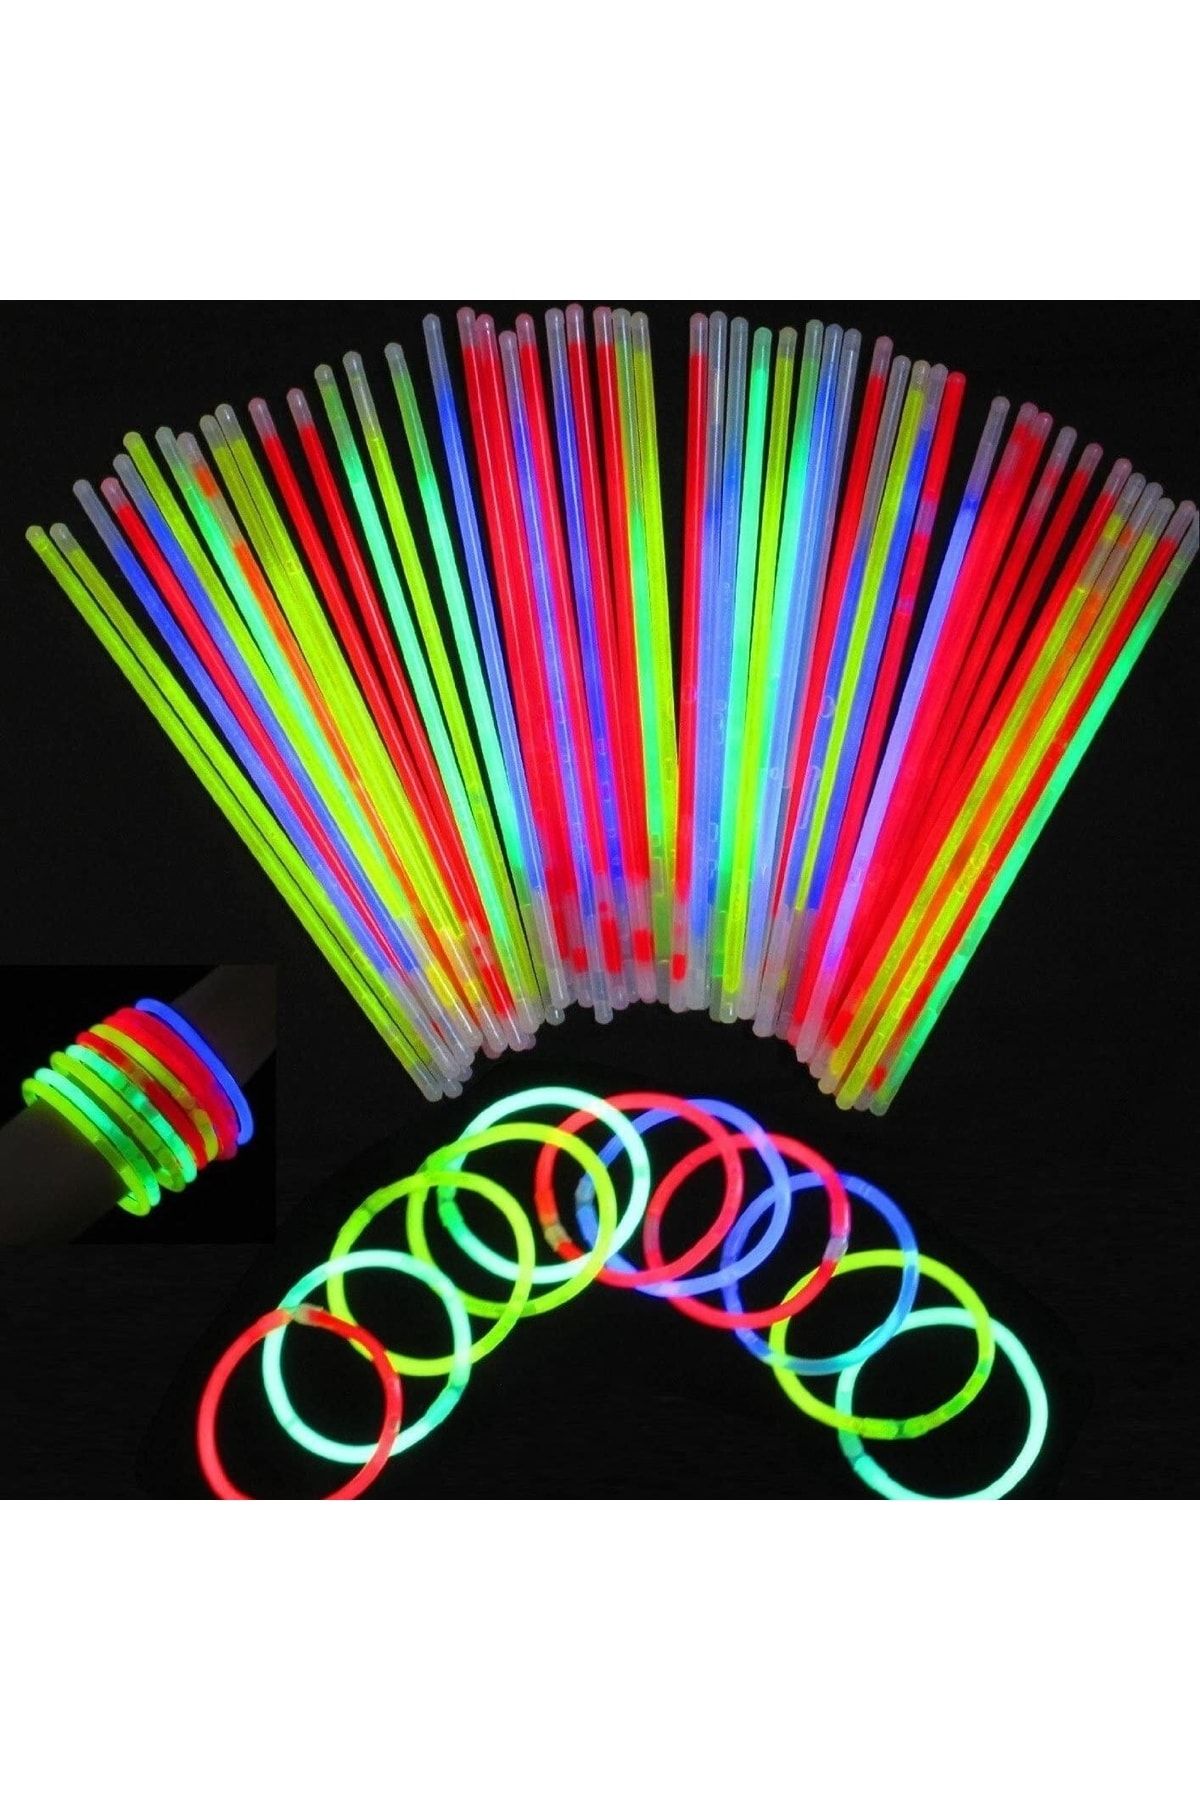 pazariz Glow Stick Fosforlu Neon Çubuk Bileklik Parti Konser Bilekliği 20 Adet